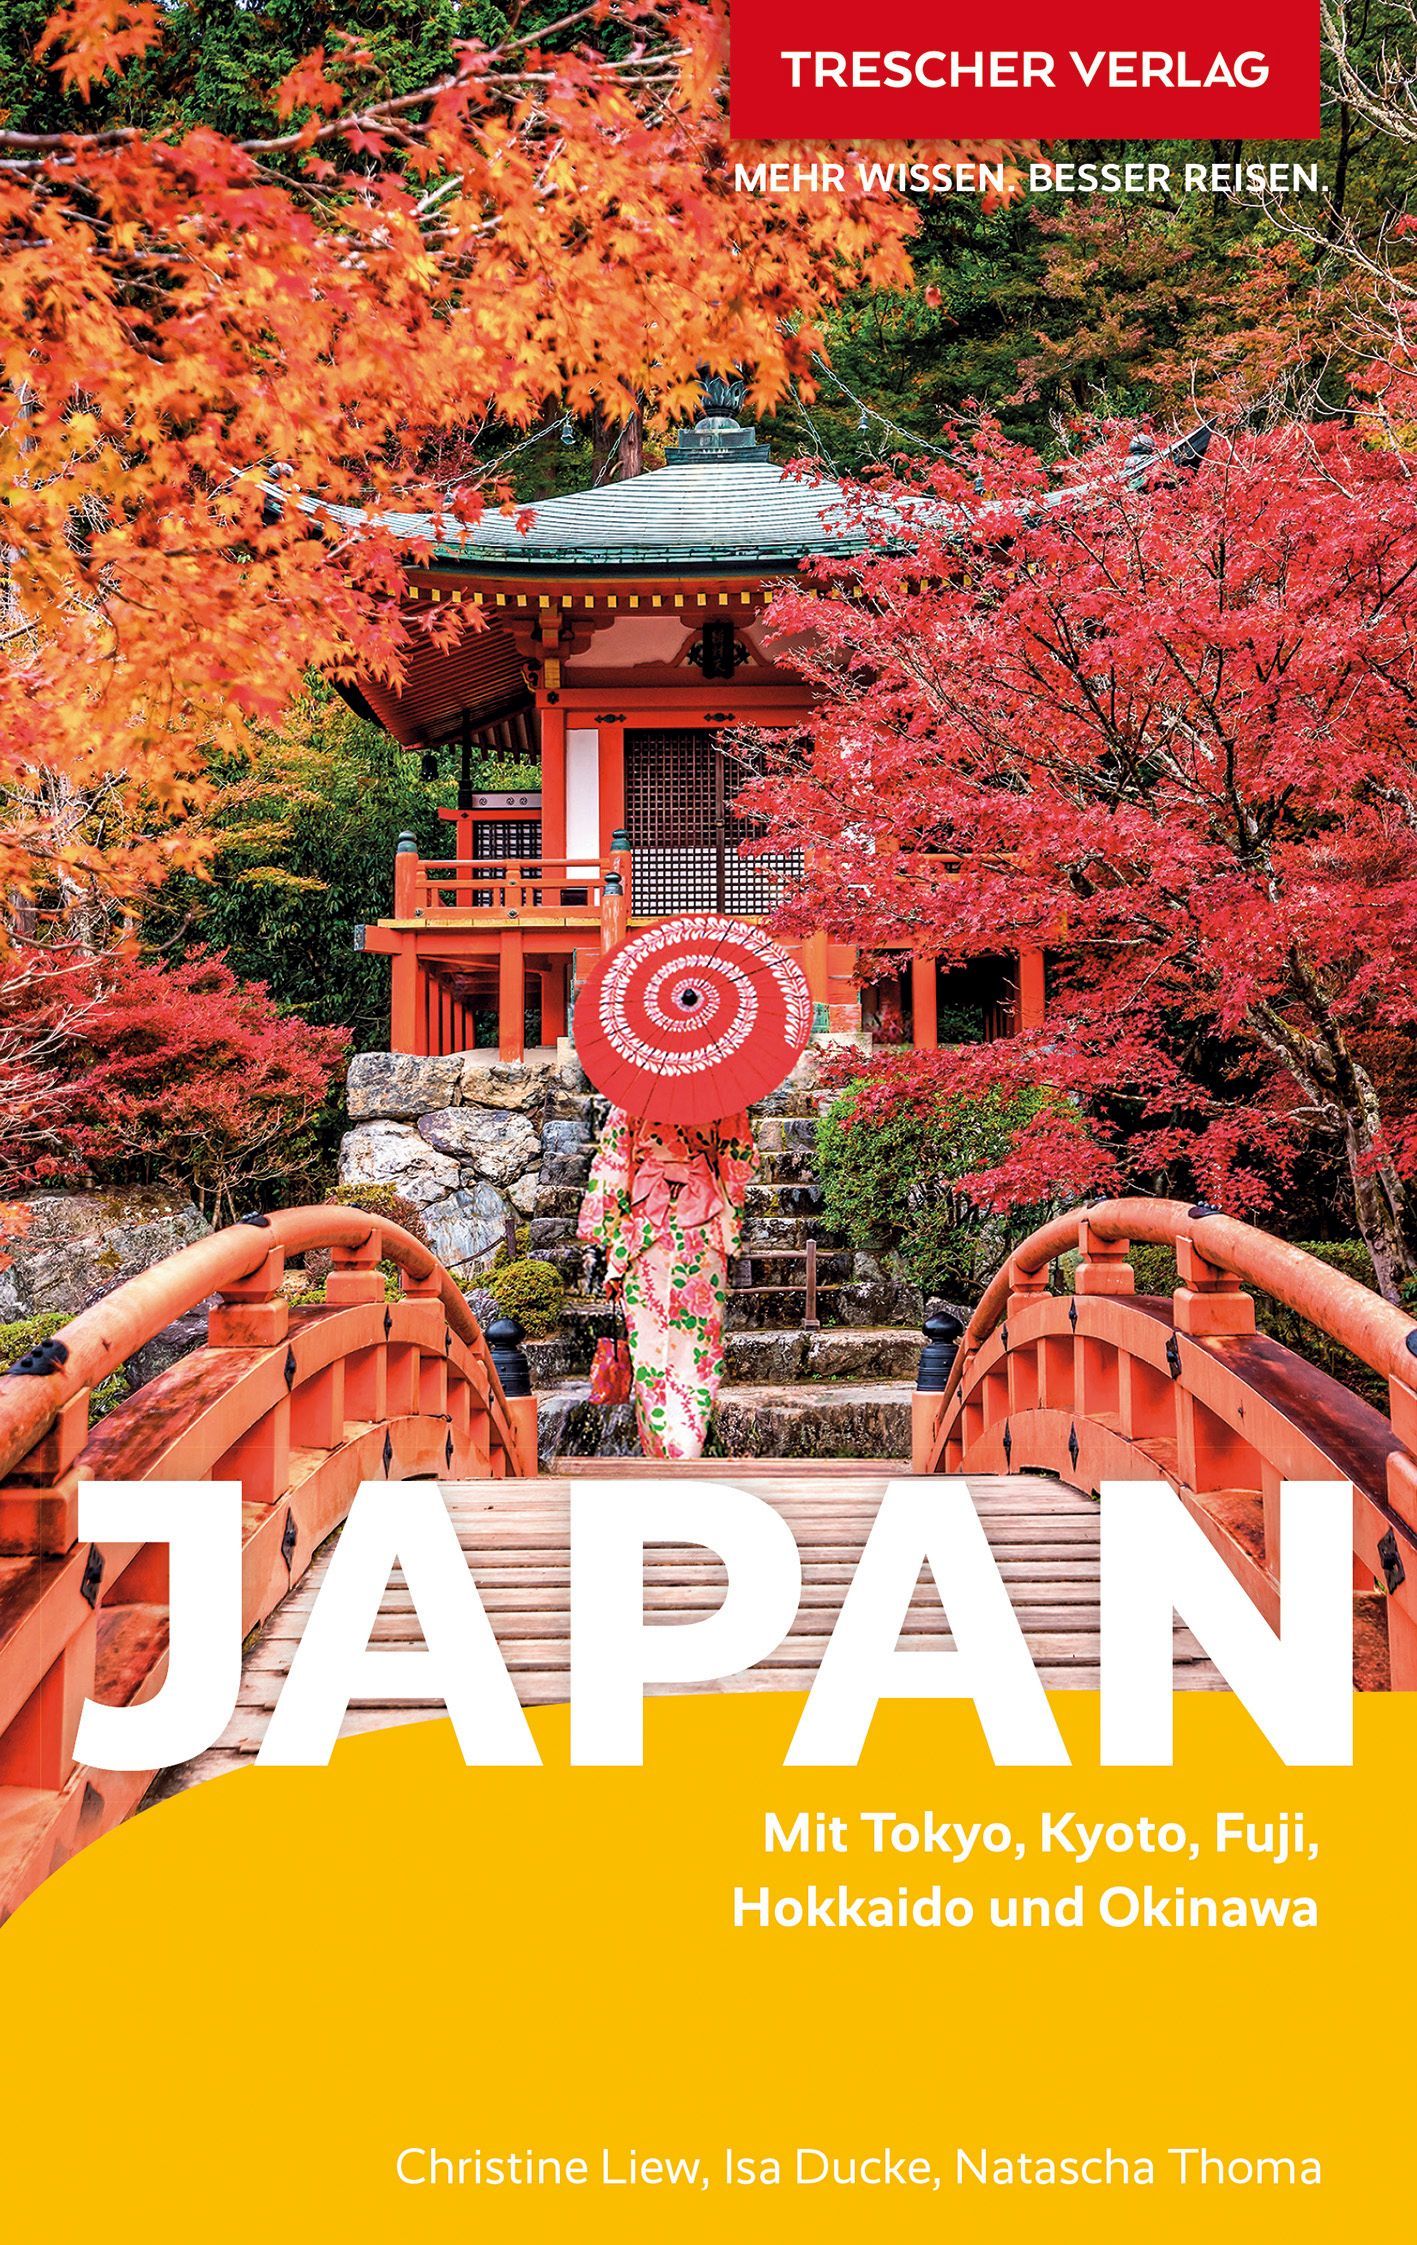 Cover Trescher-Reiseführer Japan